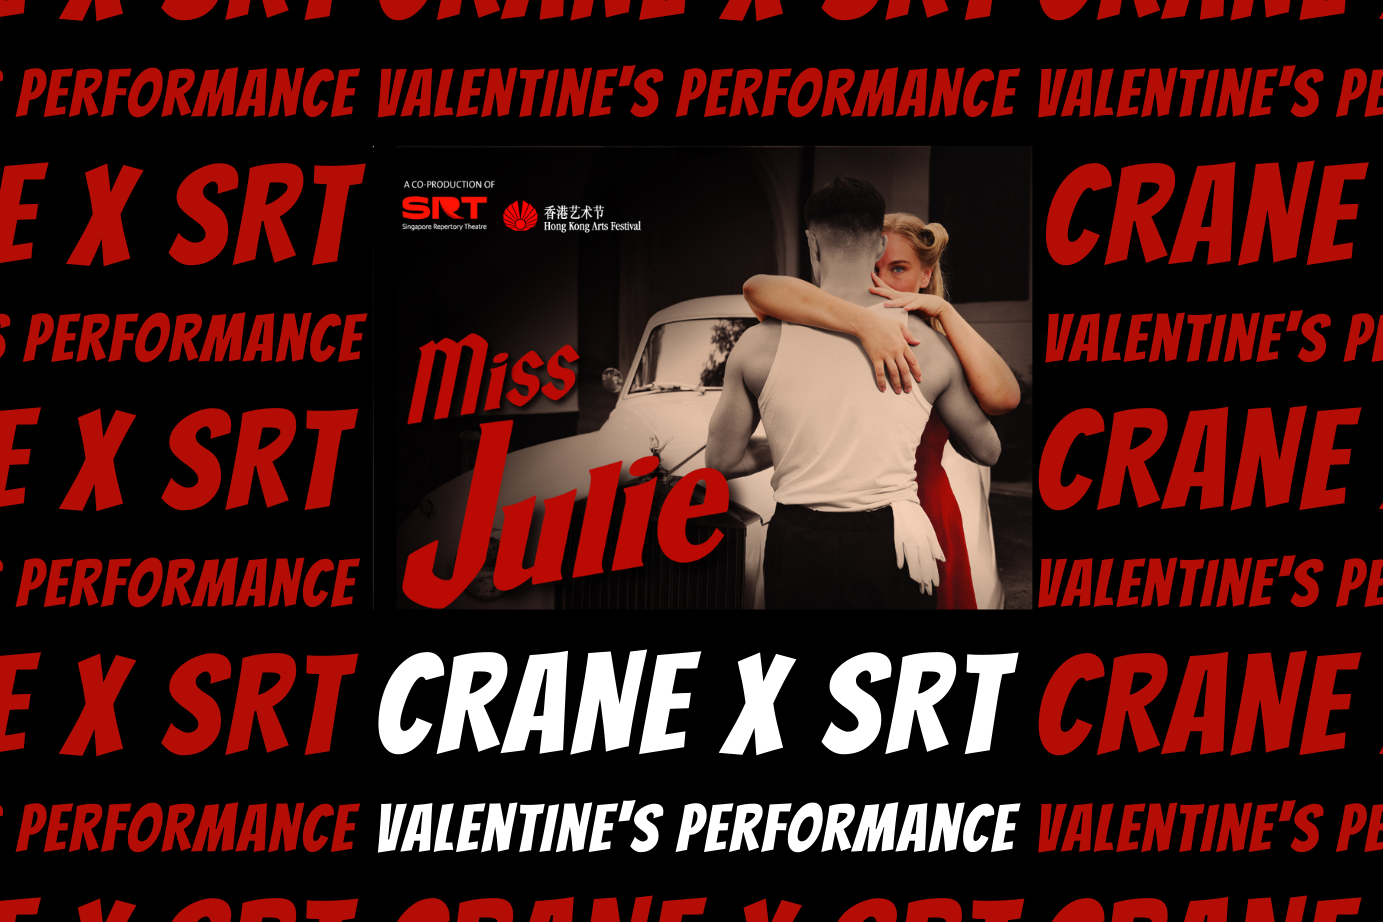 Crane X SRT Miss Julie